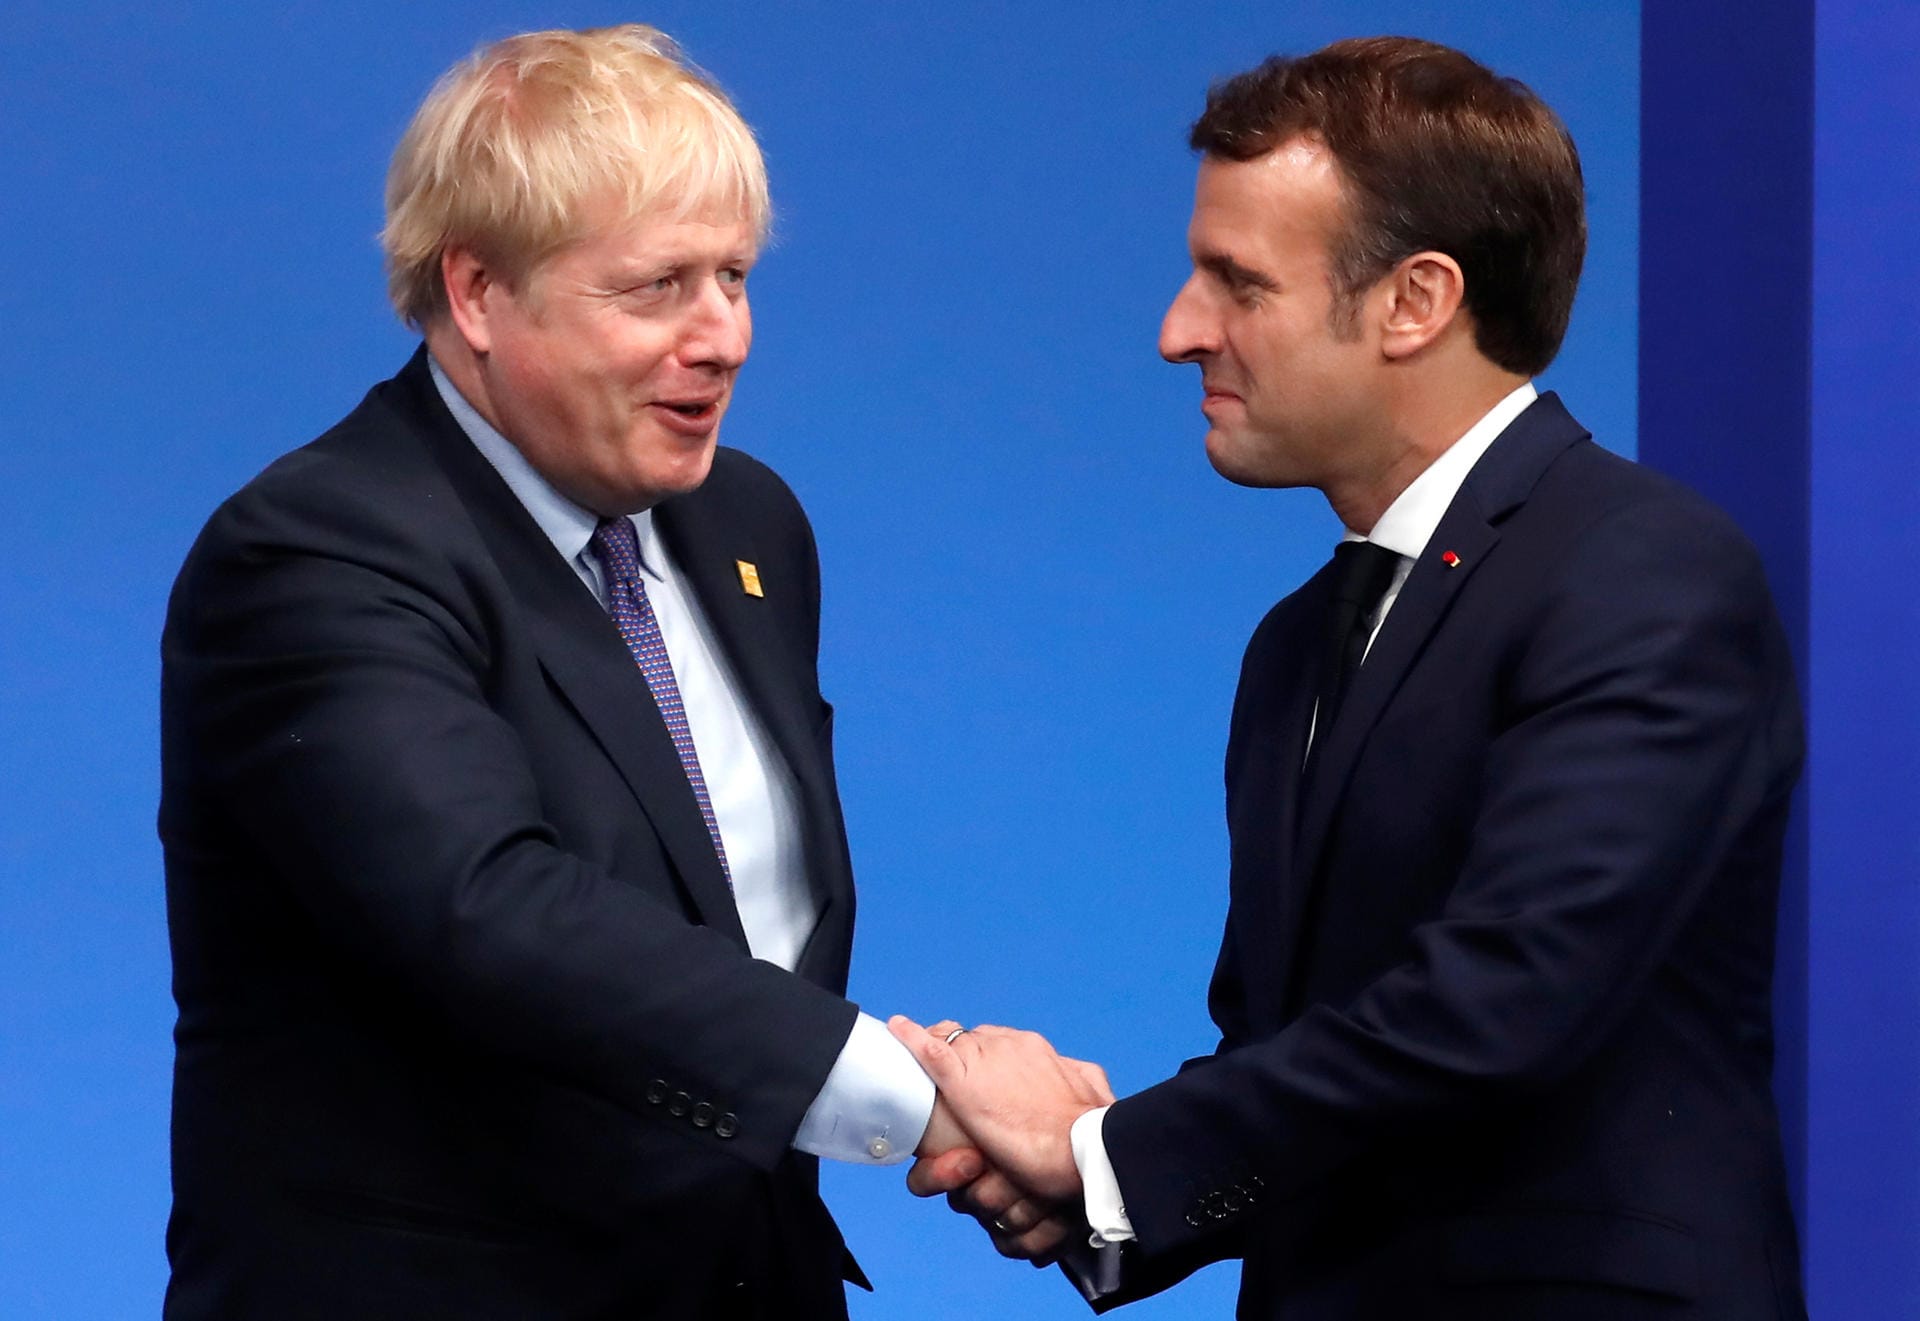 Frankreichs Staatschef Emmanuel Macron schrieb, Johnson und das britische Volk haben "in diesem schweren Moment meine ganze Unterstützung"